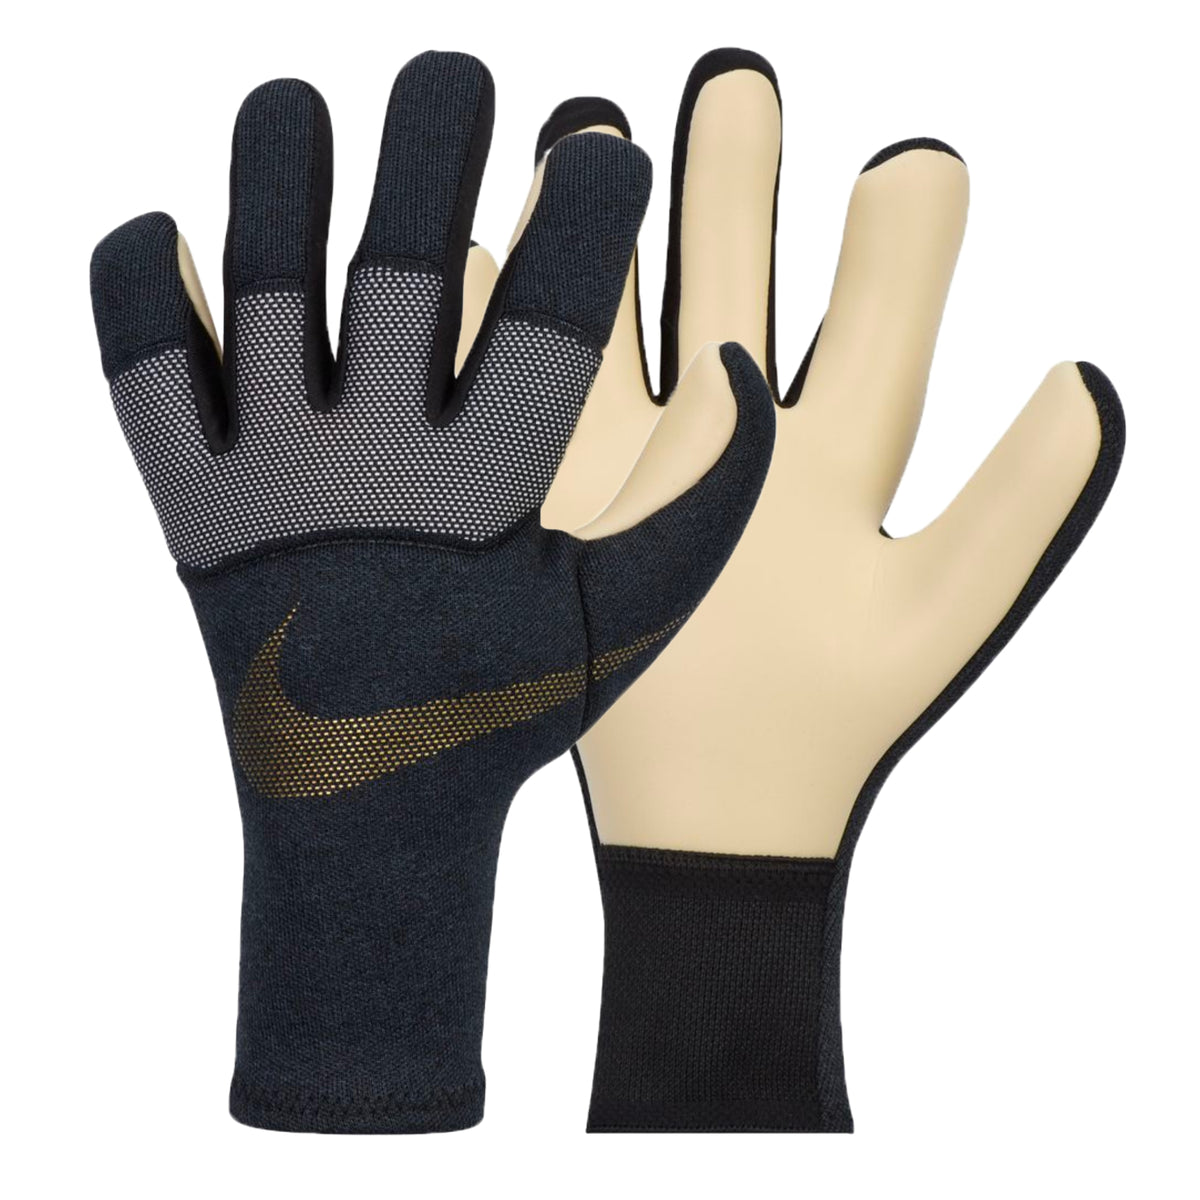 Nike Men's Grip 3 Dynamic Fit Goalkeeper Gloves Black/Gold/White ...